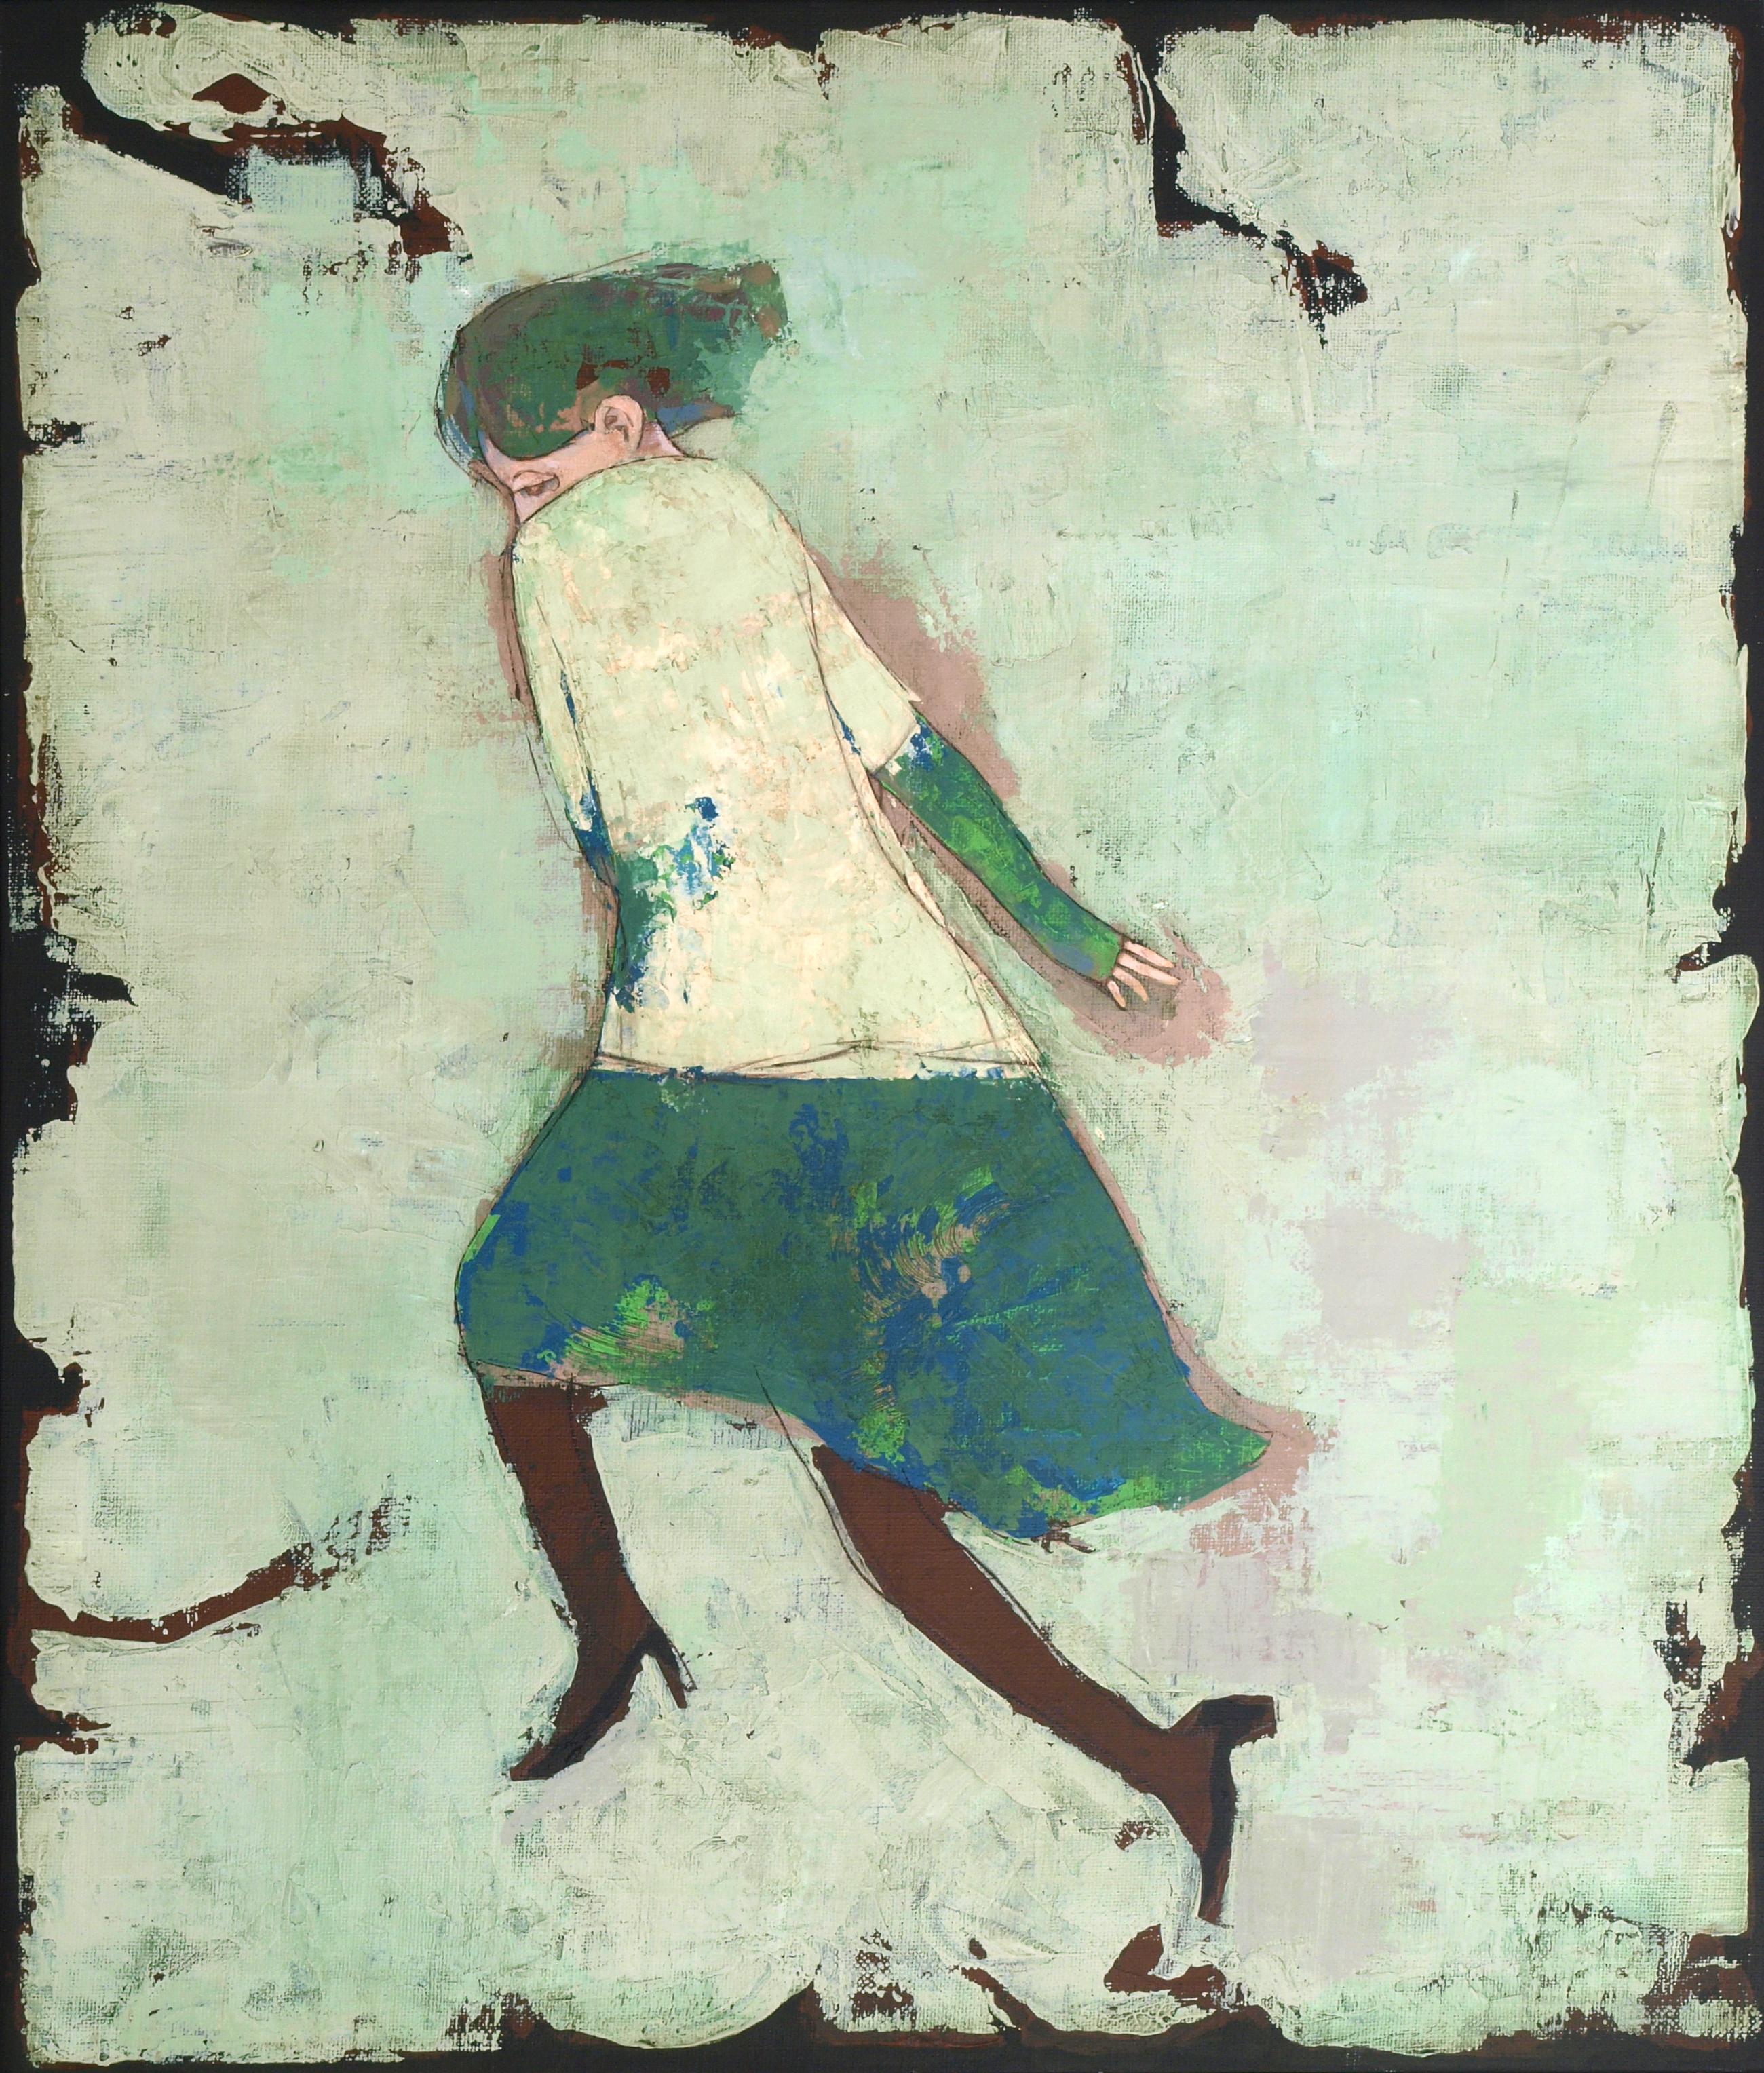 Woman running (femme, acrylique, encre sur toile,lone, posture de course, ambiance subtile) - Mixed Media Art de Kiseok Kim